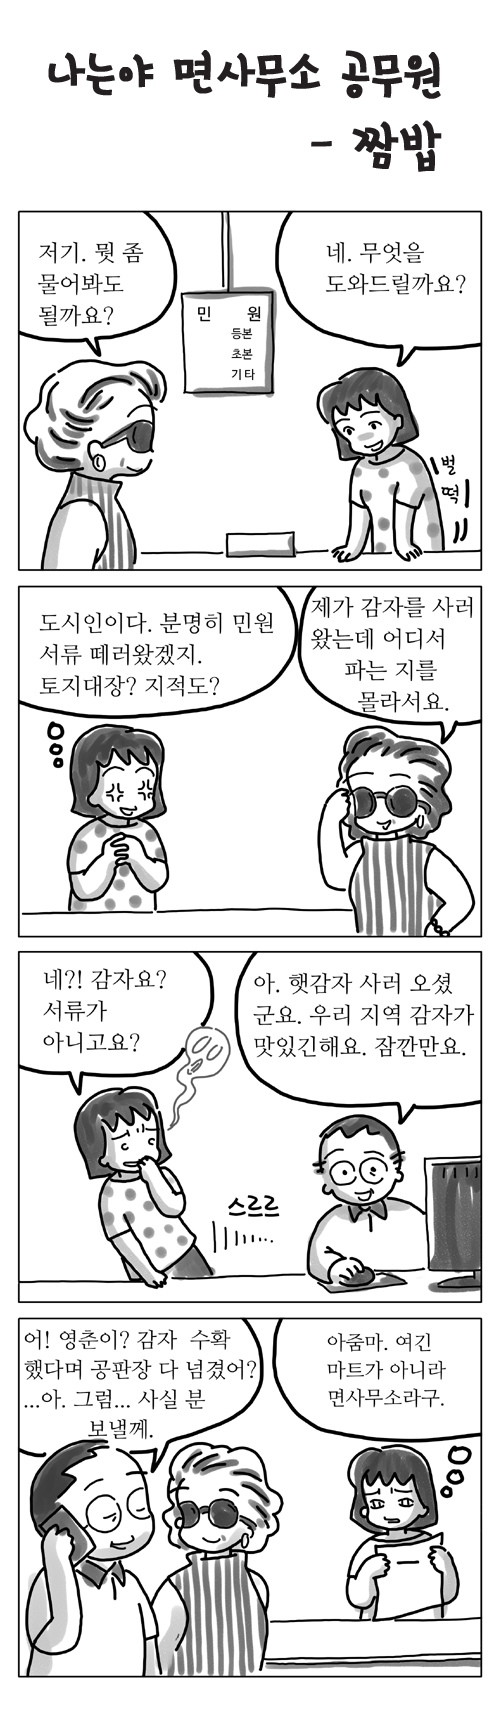 홍용훈 4컷 만화